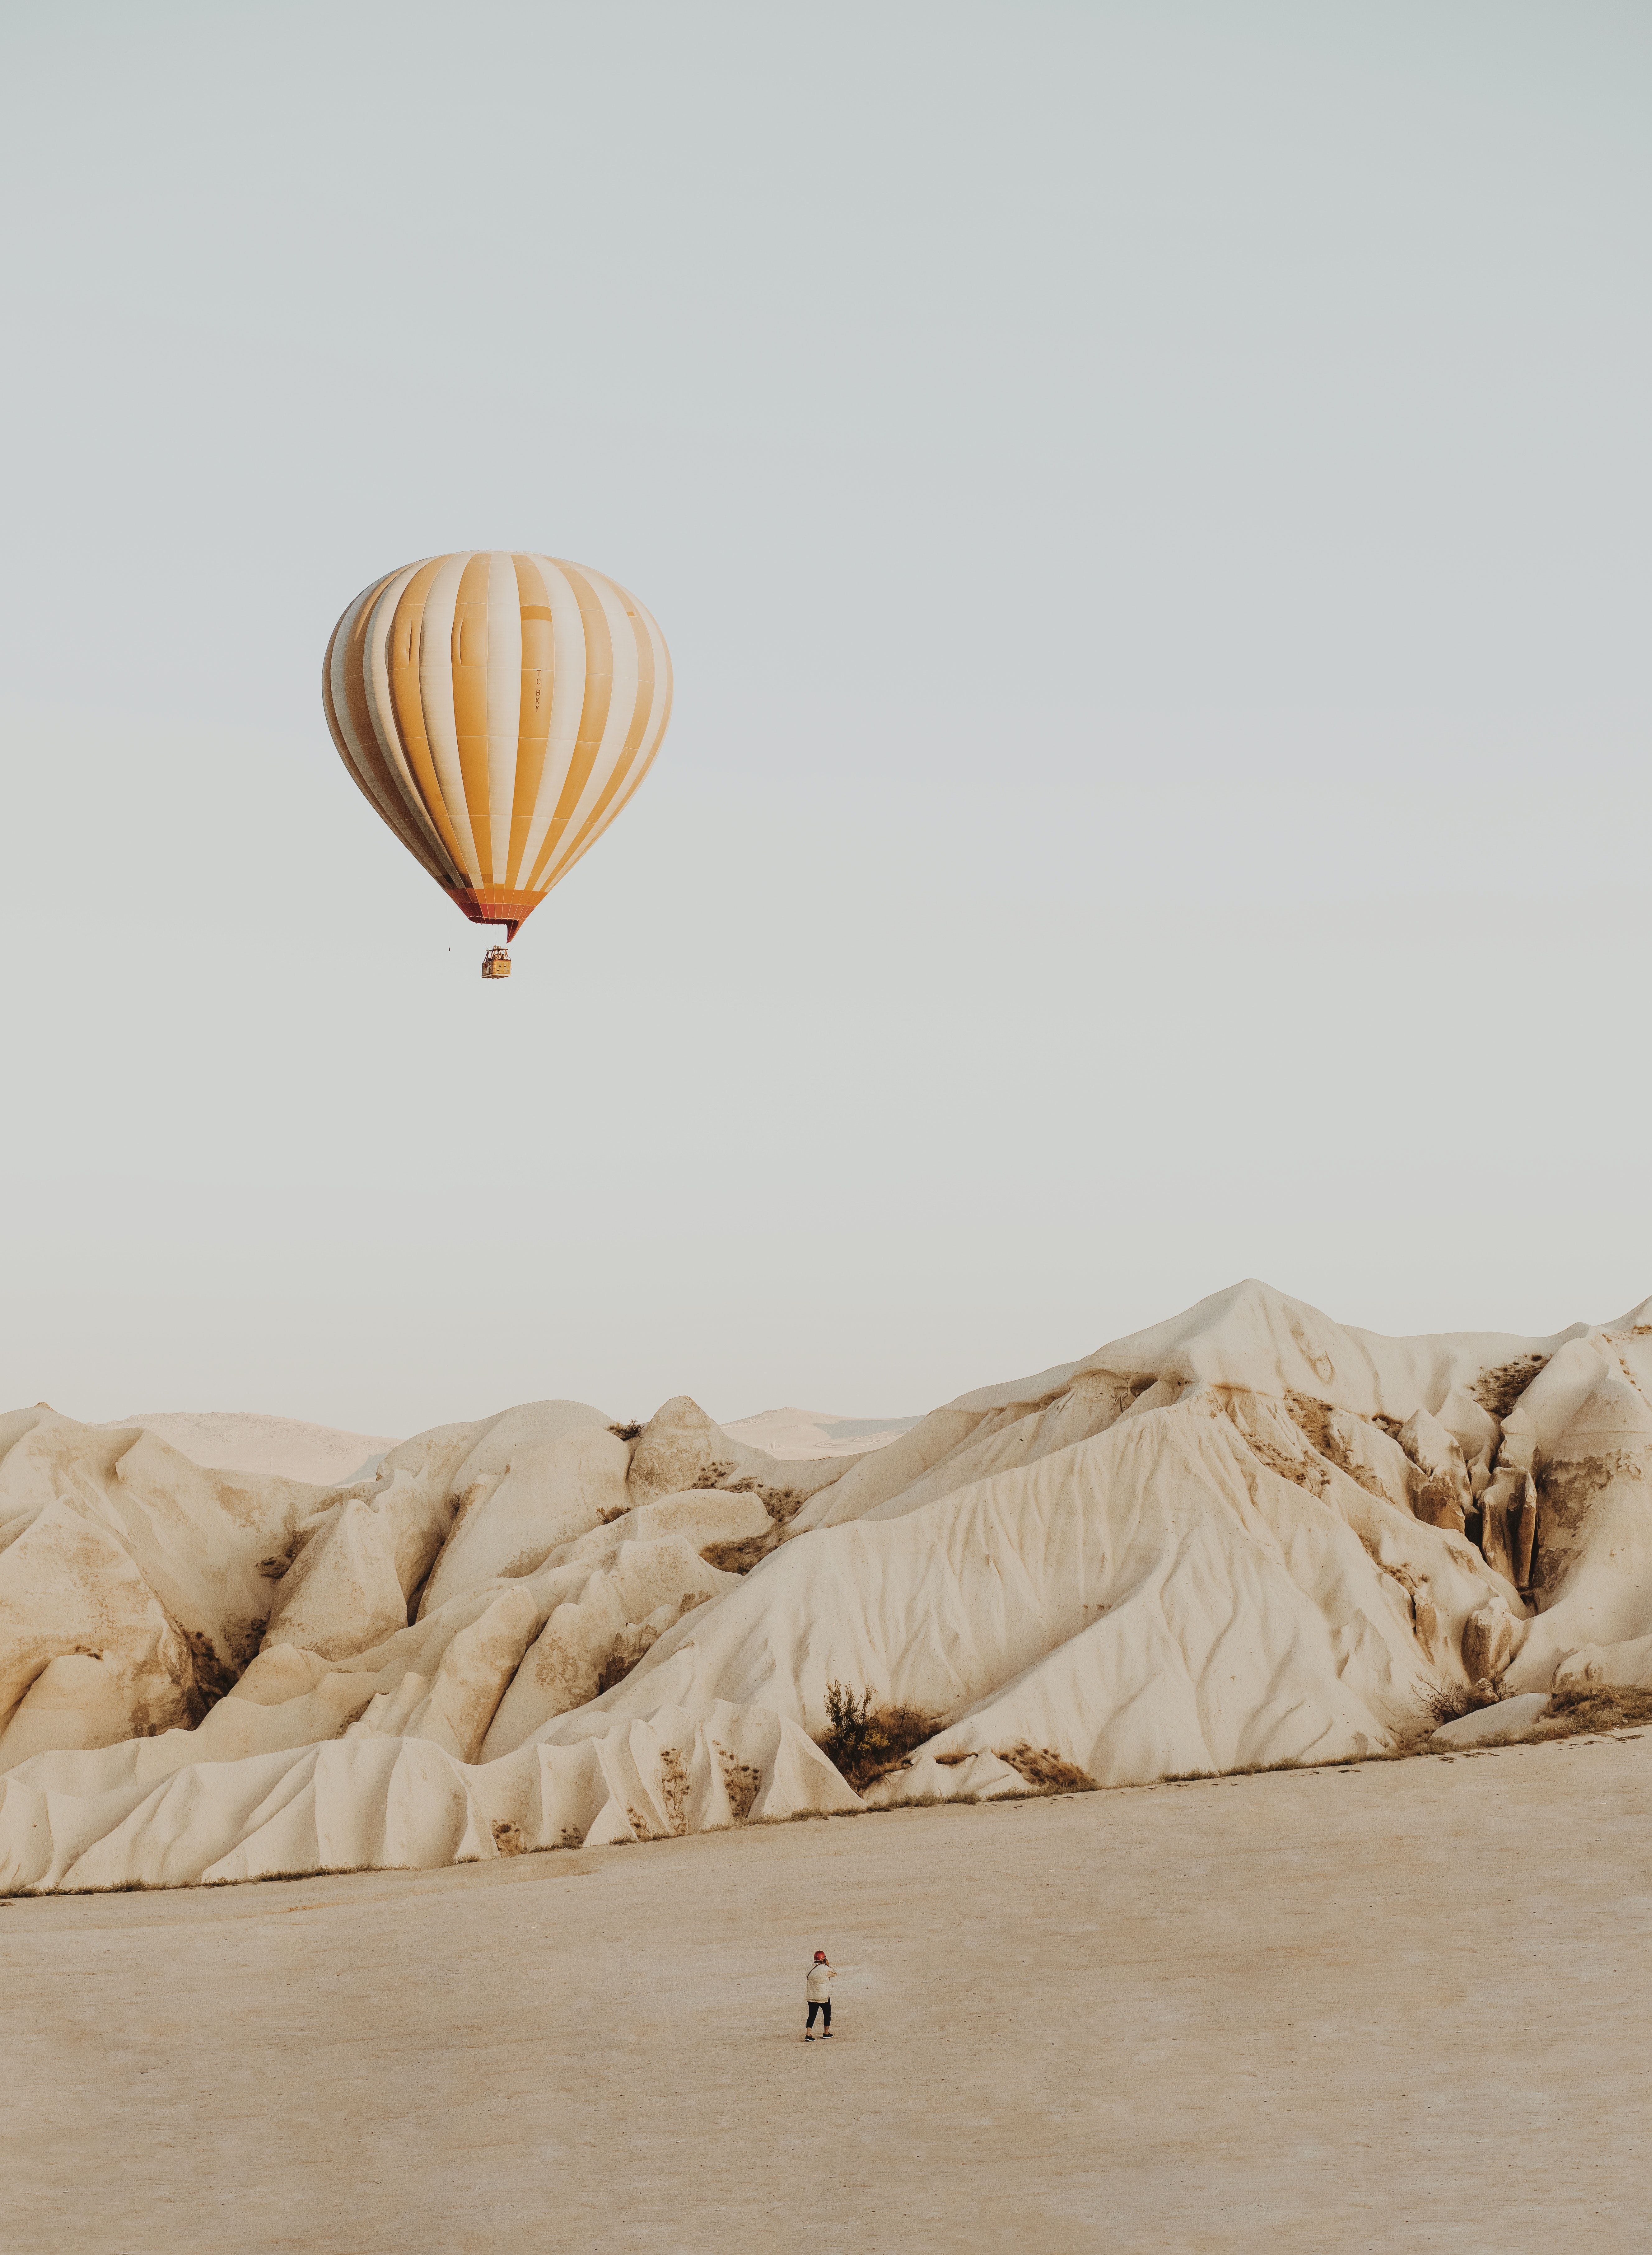 Desert Front of Hot Air Balloon .pexels.com